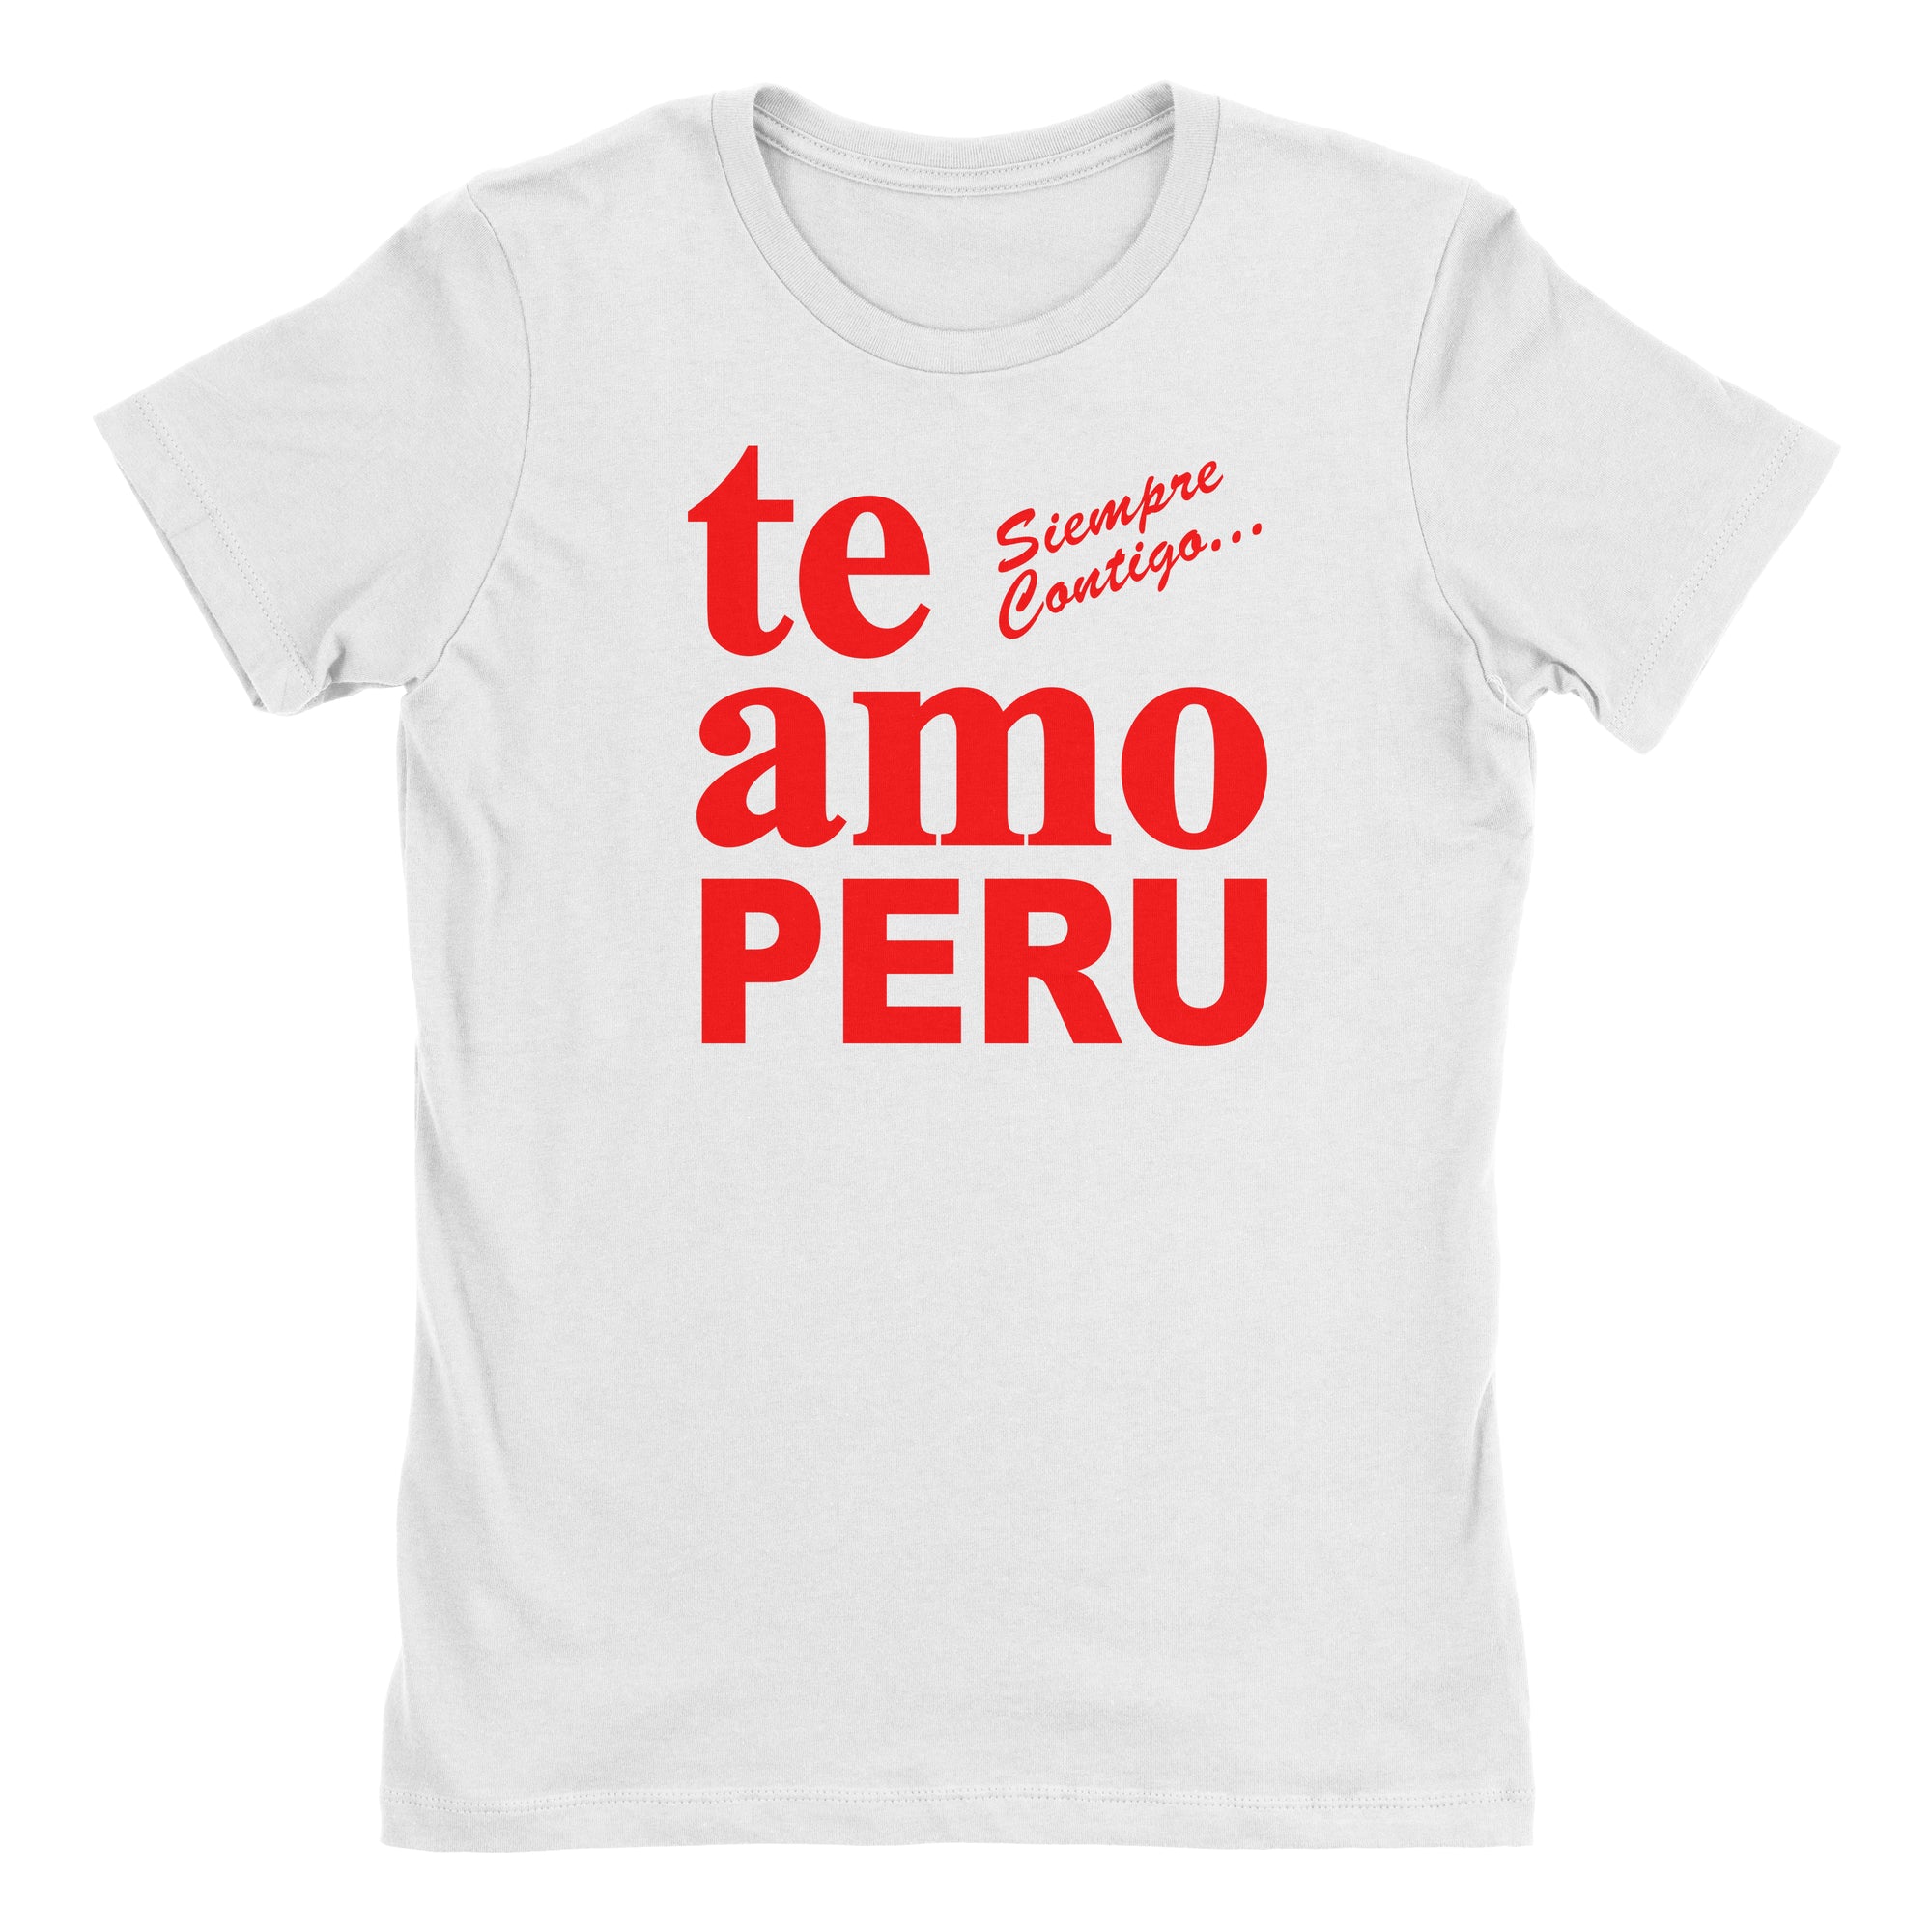 Te Amo Peru Siempre Contigo White Short Sleeve Crewneck T-Shirt for Juniors